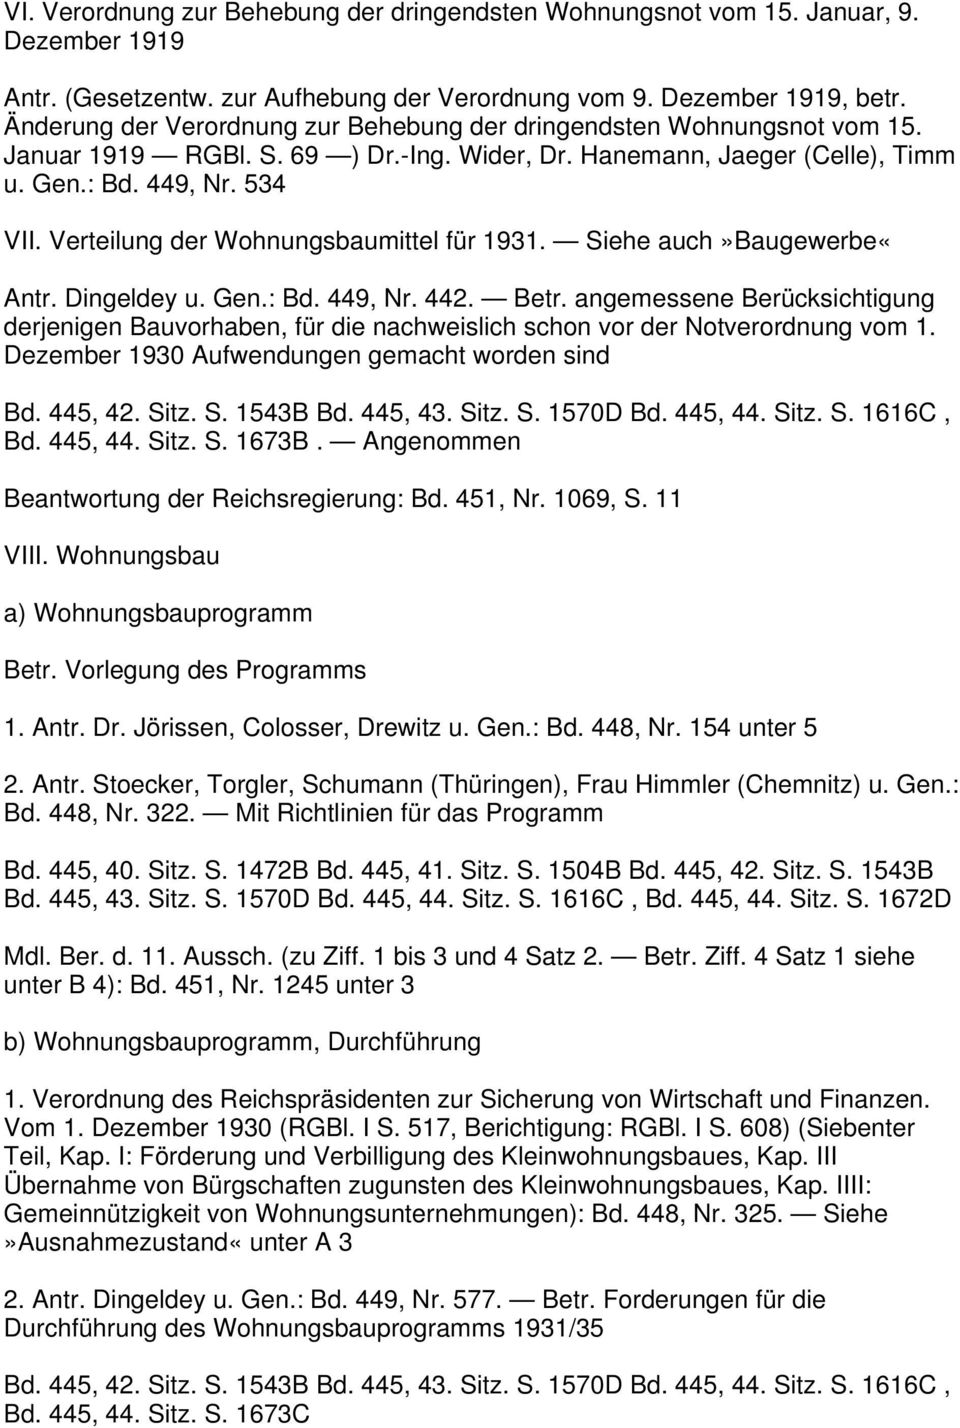 Verteilung der Wohnungsbaumittel für 1931. Siehe auch»baugewerbe«antr. Dingeldey u. Gen.: Bd. 449, Nr. 442. Betr.